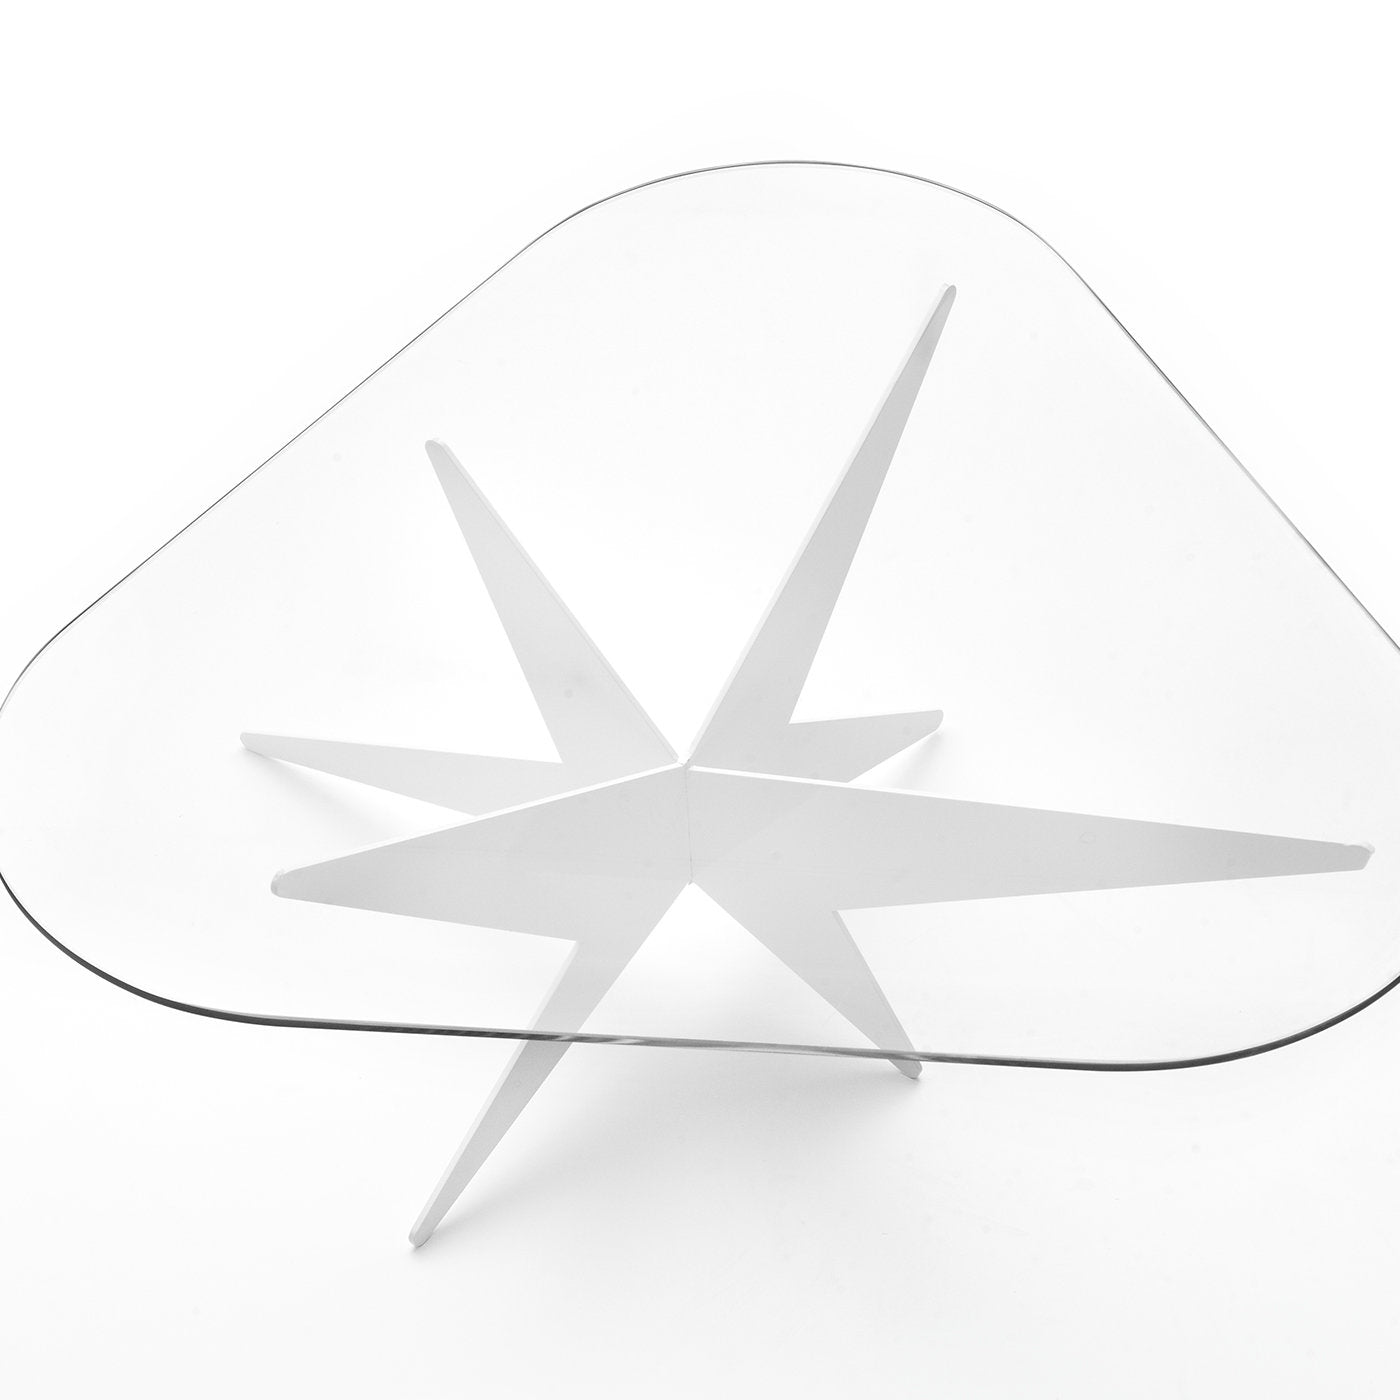 Star Triangular Coffee Table by Antonio Pio Saracino - Alternative view 1